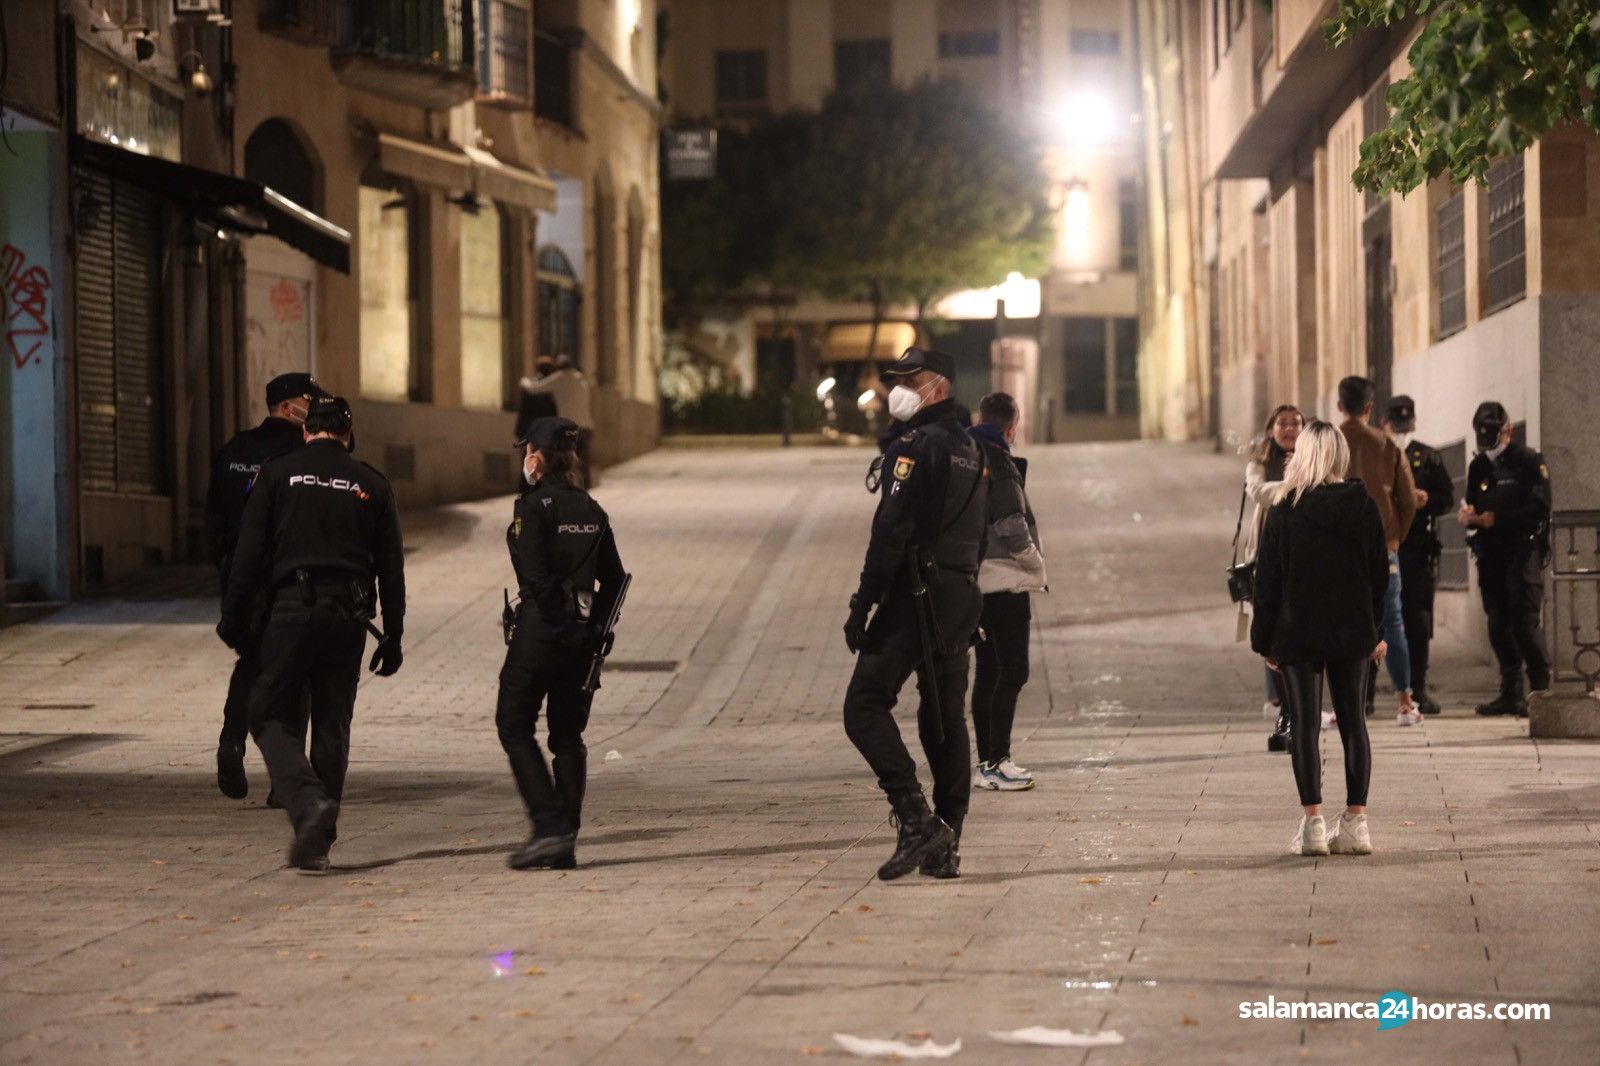  Policia nacional noche confinamiento Image 2020 10 18 at 00.03.34 (1) 